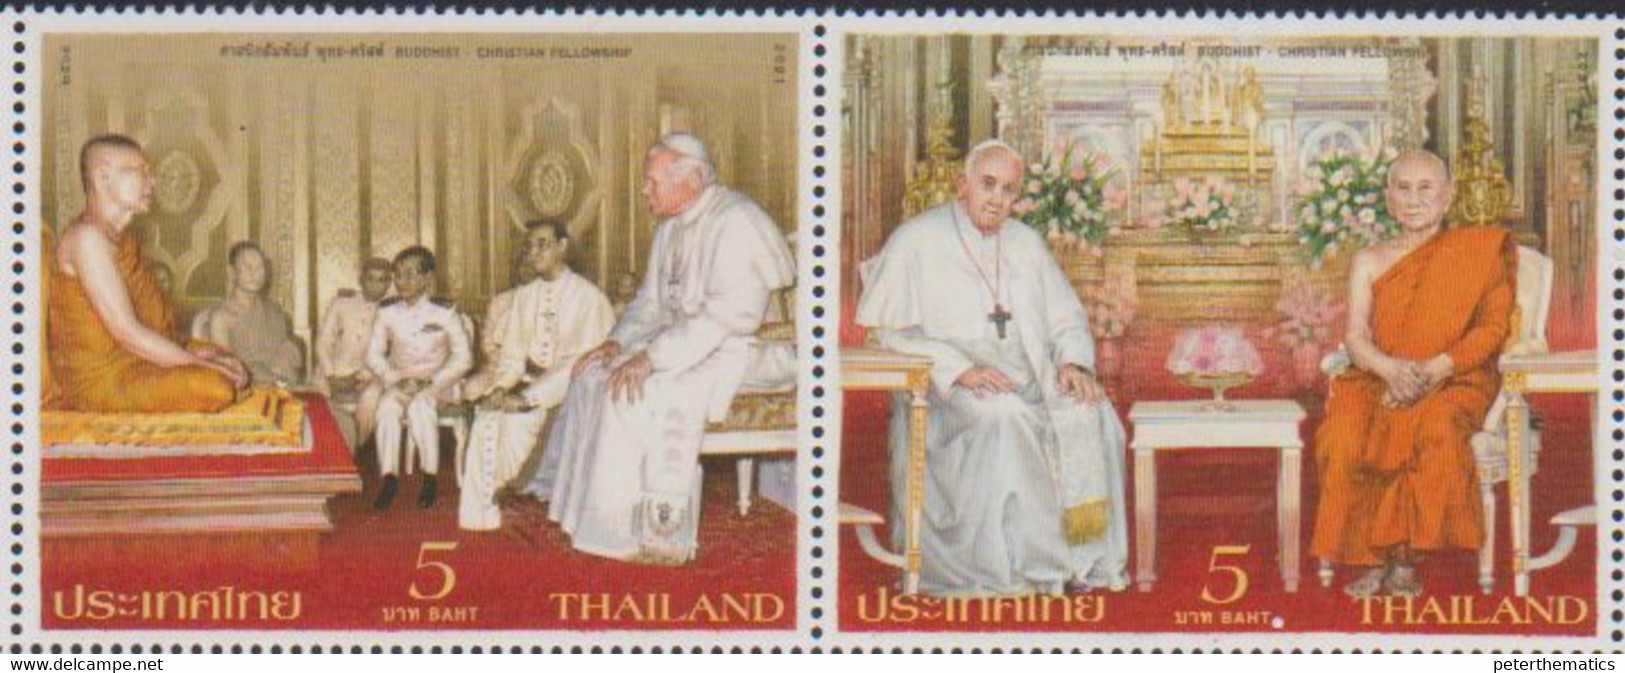 THAILAND, 2021, MNH, RELIGION, BUDDHISM, CHRISTIANITY, BUDDHIST-CHRISTIAN FELLOWSHIP, POPES, 2v - Buddhism